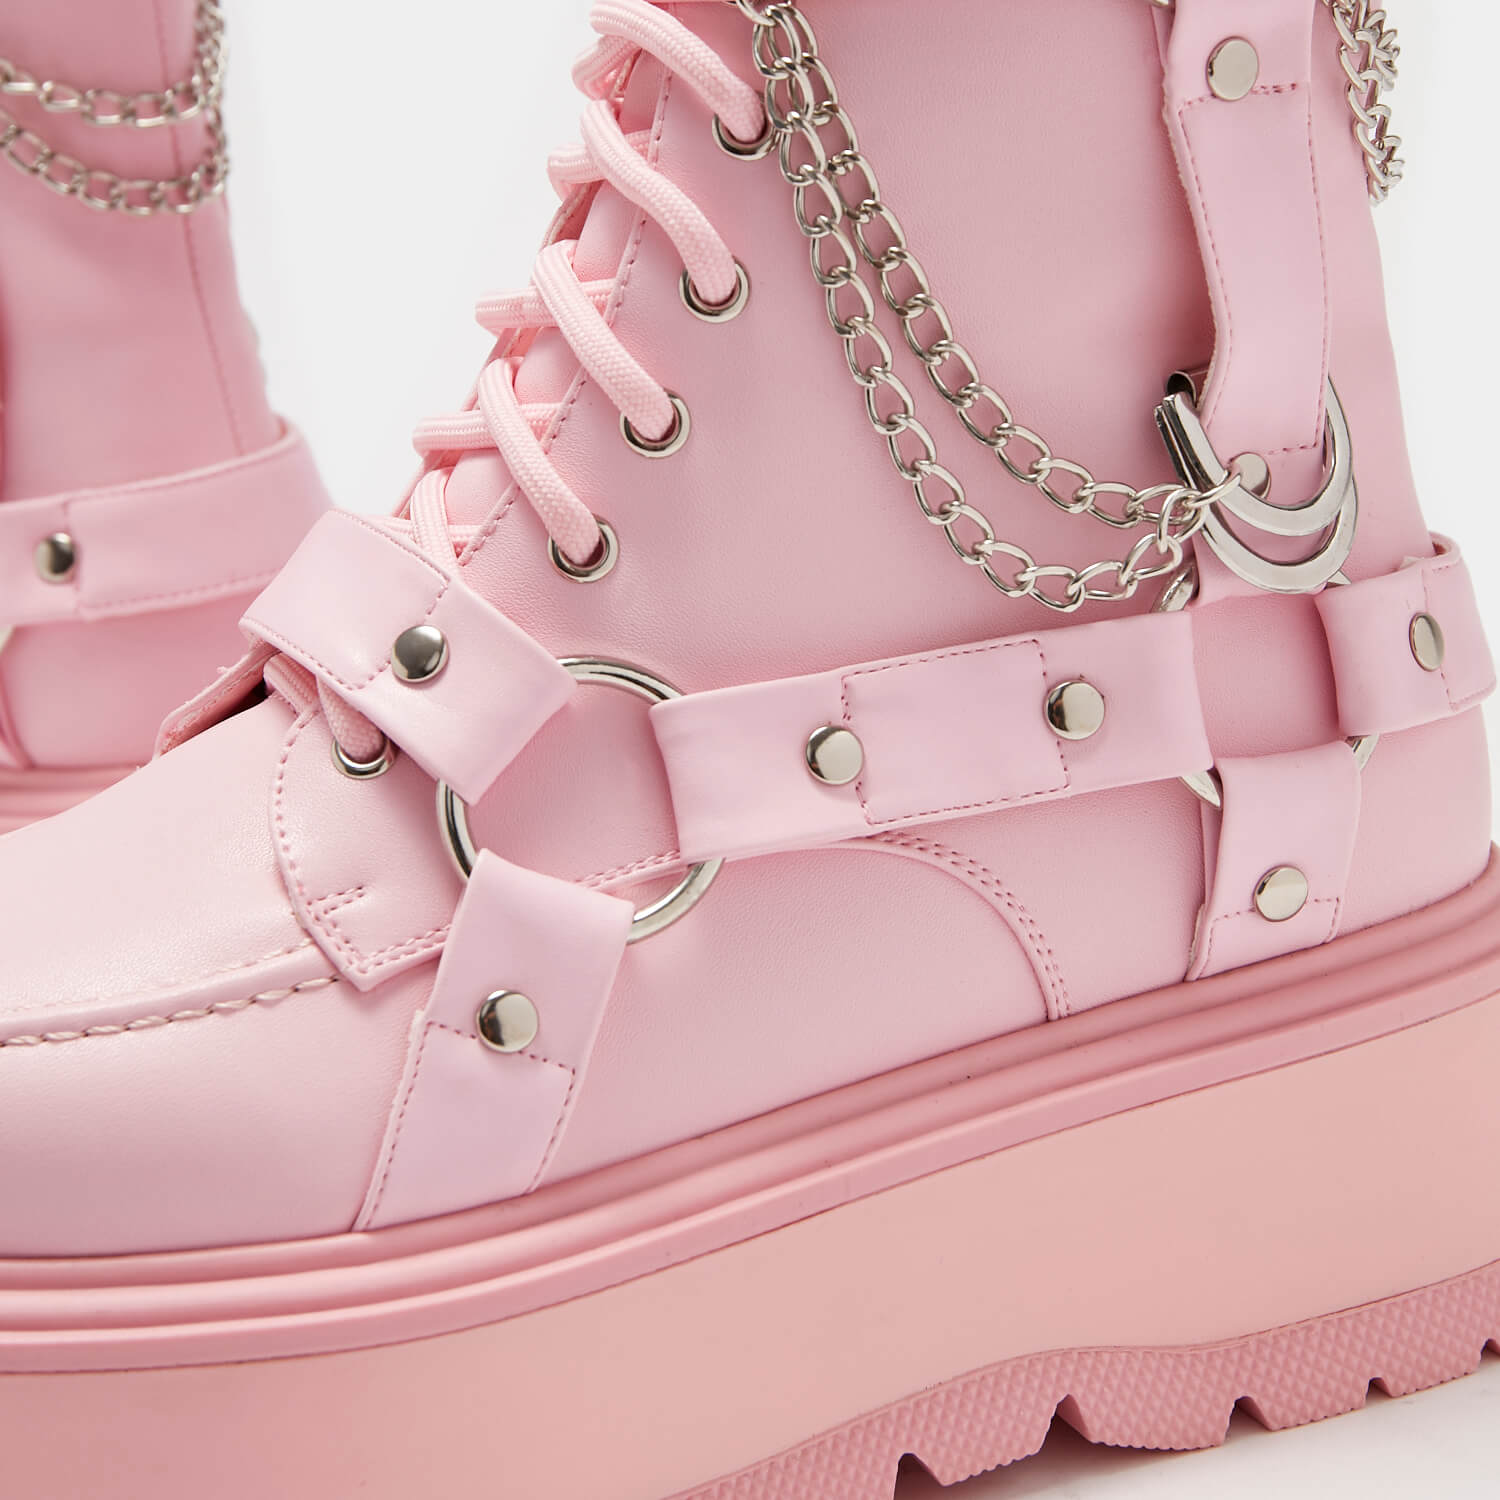 Yami Pastel Pink Platform Boots - Ankle Boots - KOI Footwear - Pink - Platform Detail